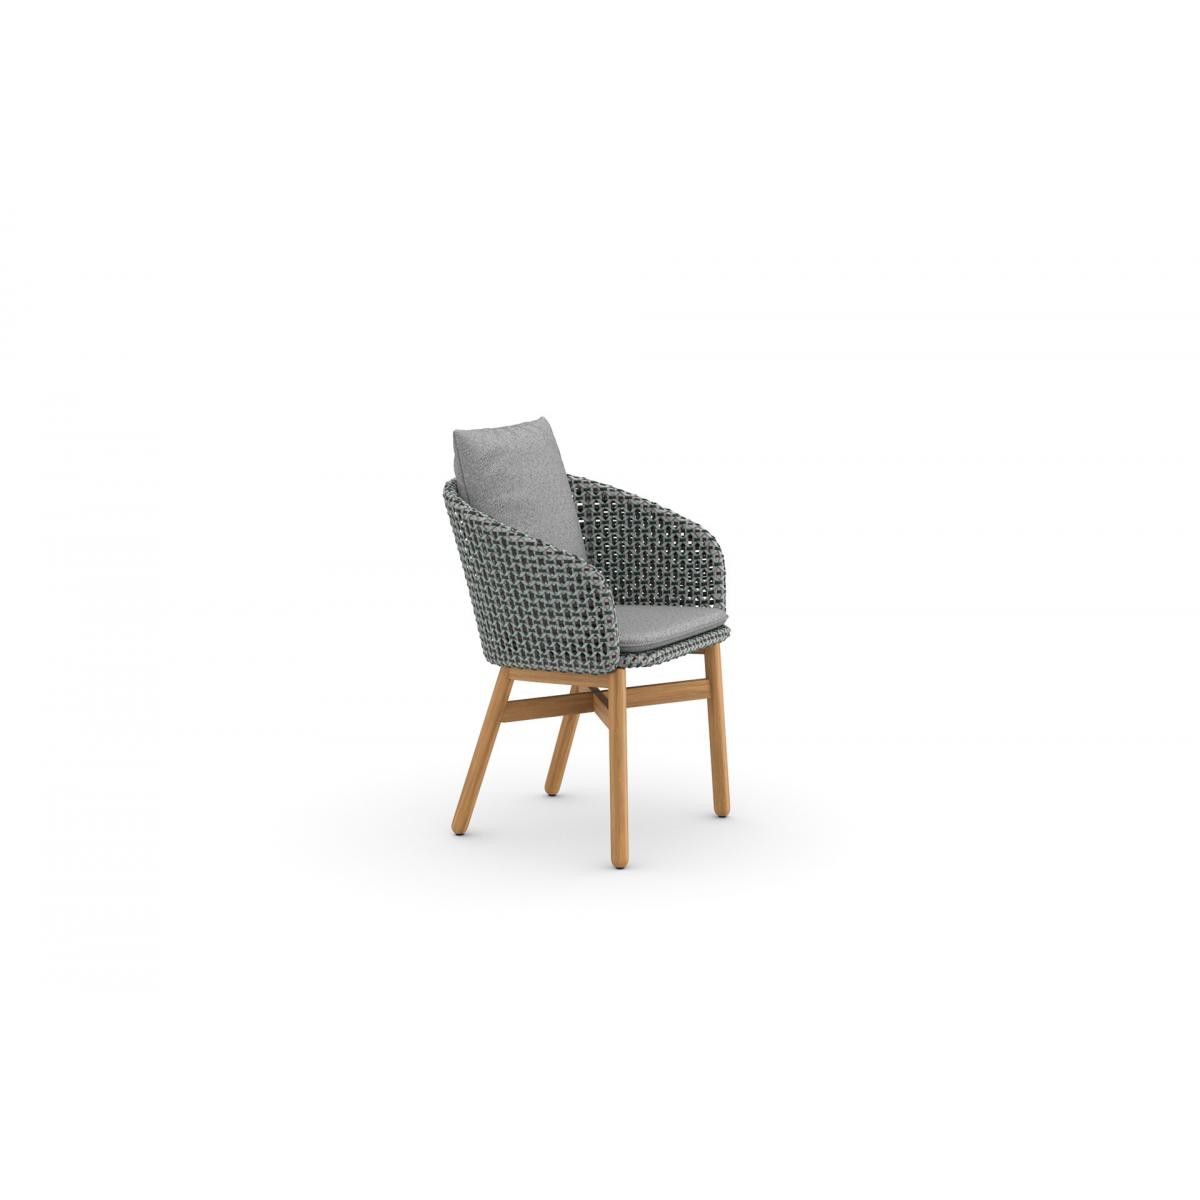 Dedon - Chaise avec accoudoirs Mbrace - Teck - Dedon141Baltic - Chaises de jardin